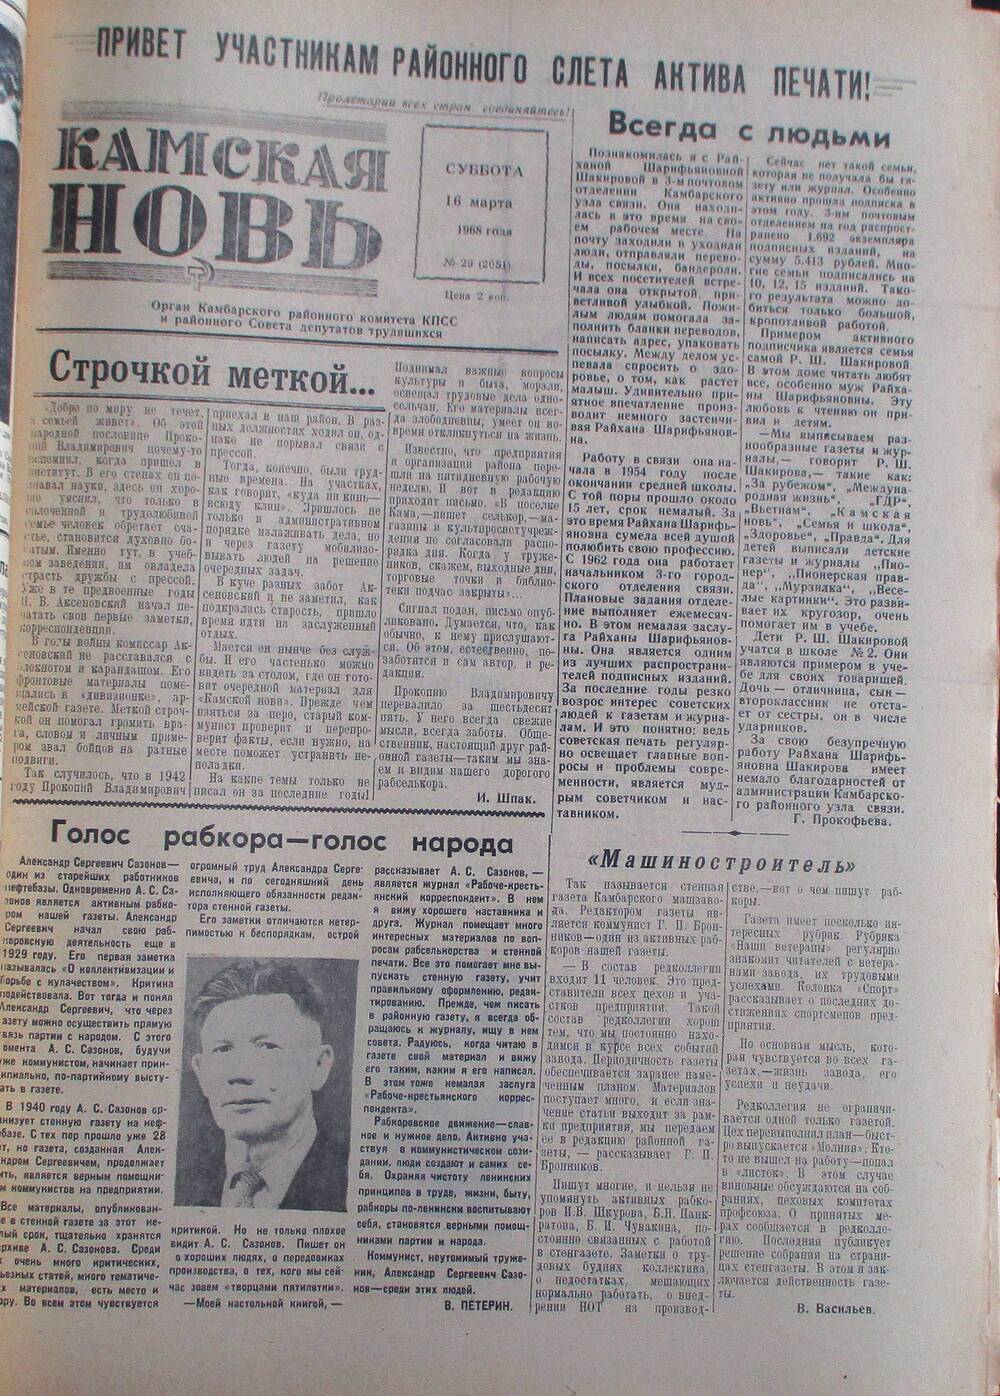 Газета Камская новь за 1968 год, орган Камбарского Райсовета и РККПСС, подшивка с №1 по №150, №29.